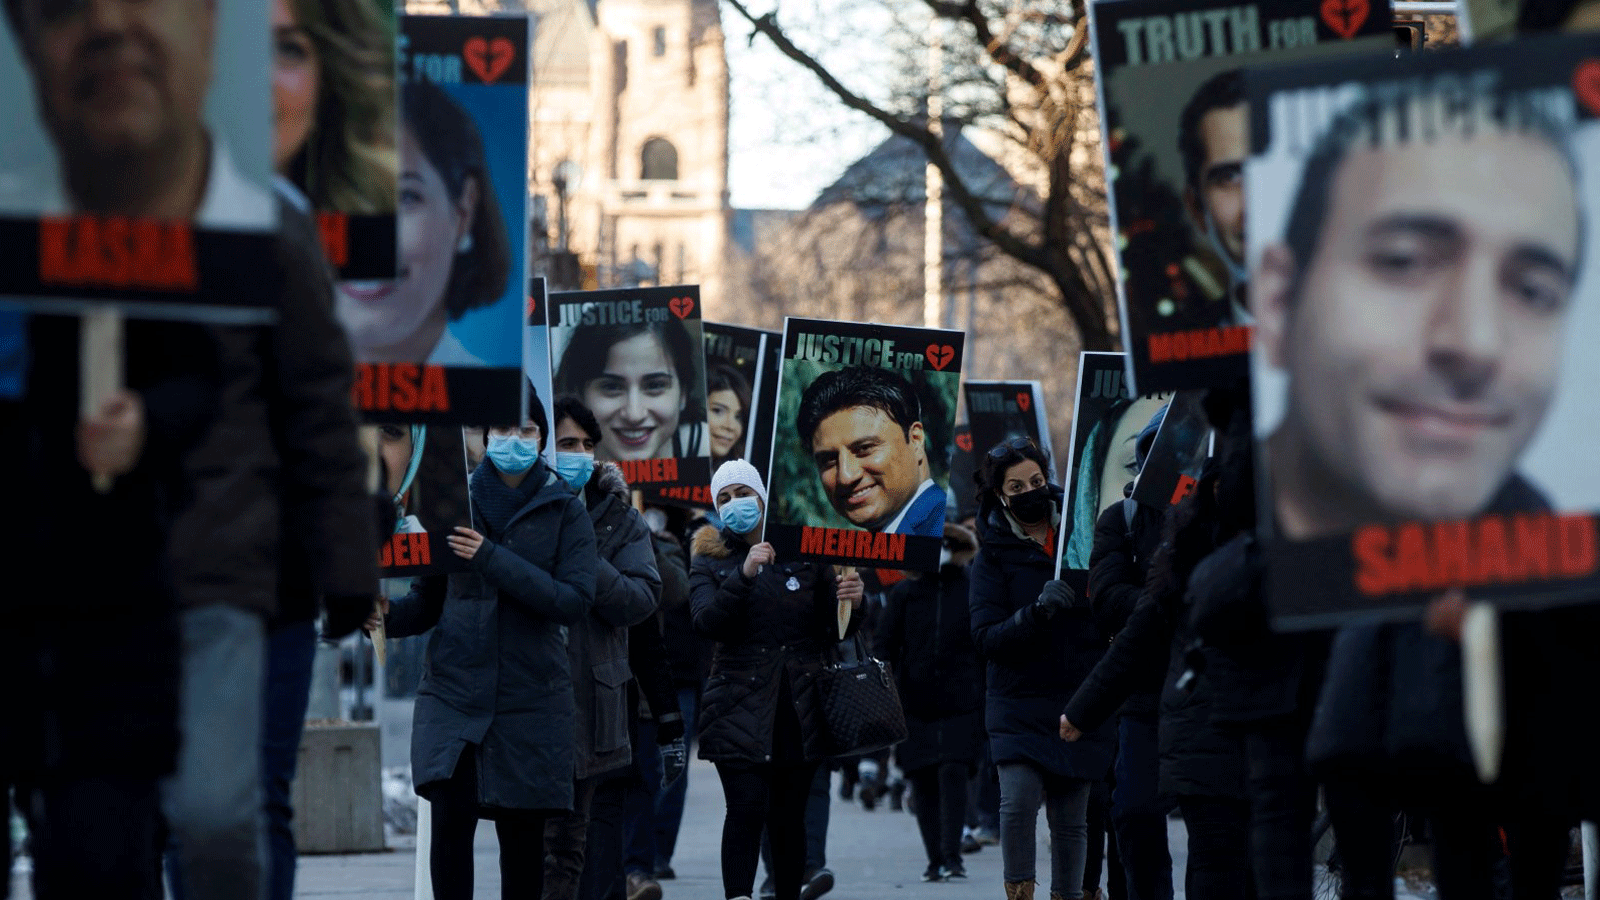  أشخاص يحملون لافتات عليها صور ضحايا طائرة الخطوط الجوية الدولية الأوكرانية المسقطة PS752، والتي أسقطها الحرس الثوري الإيراني بالقرب من طهران، بينما تتجمع العائلة والأصدقاء للمشاركة في مسيرة للاحتفال بالذكرى السنوية الأولى، في تورنتو، أونتاريو، كندا في 8 كانون الثاني/يناير 2021